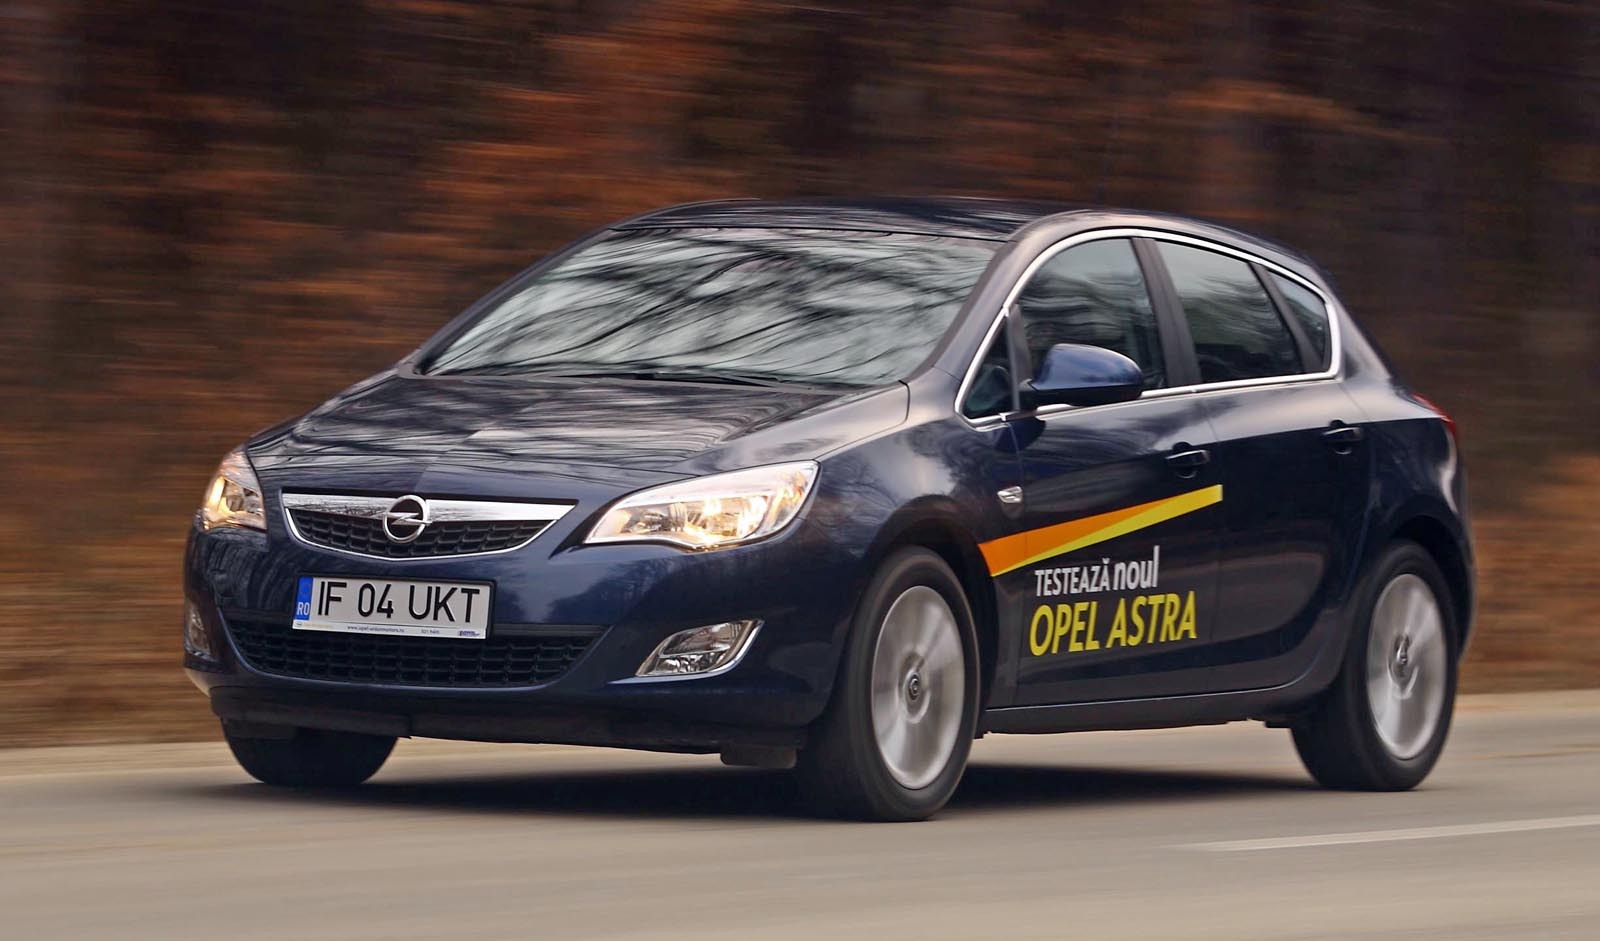 In cazul modelelor de test, Opel Astra era chiar mai confortabila decat Citroen C4